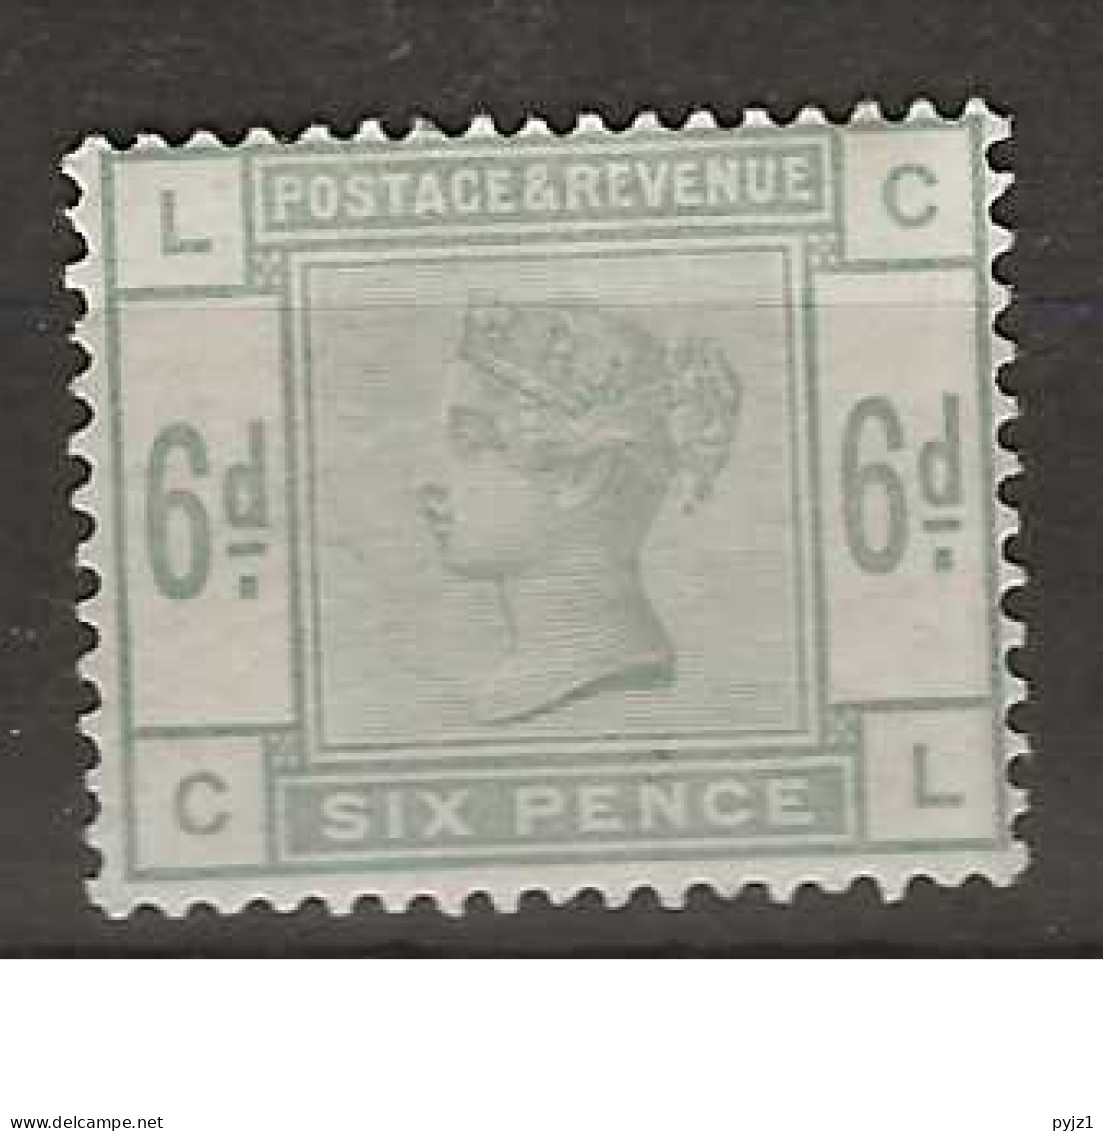 1883 MH Great Britain SG 194 - Nuovi